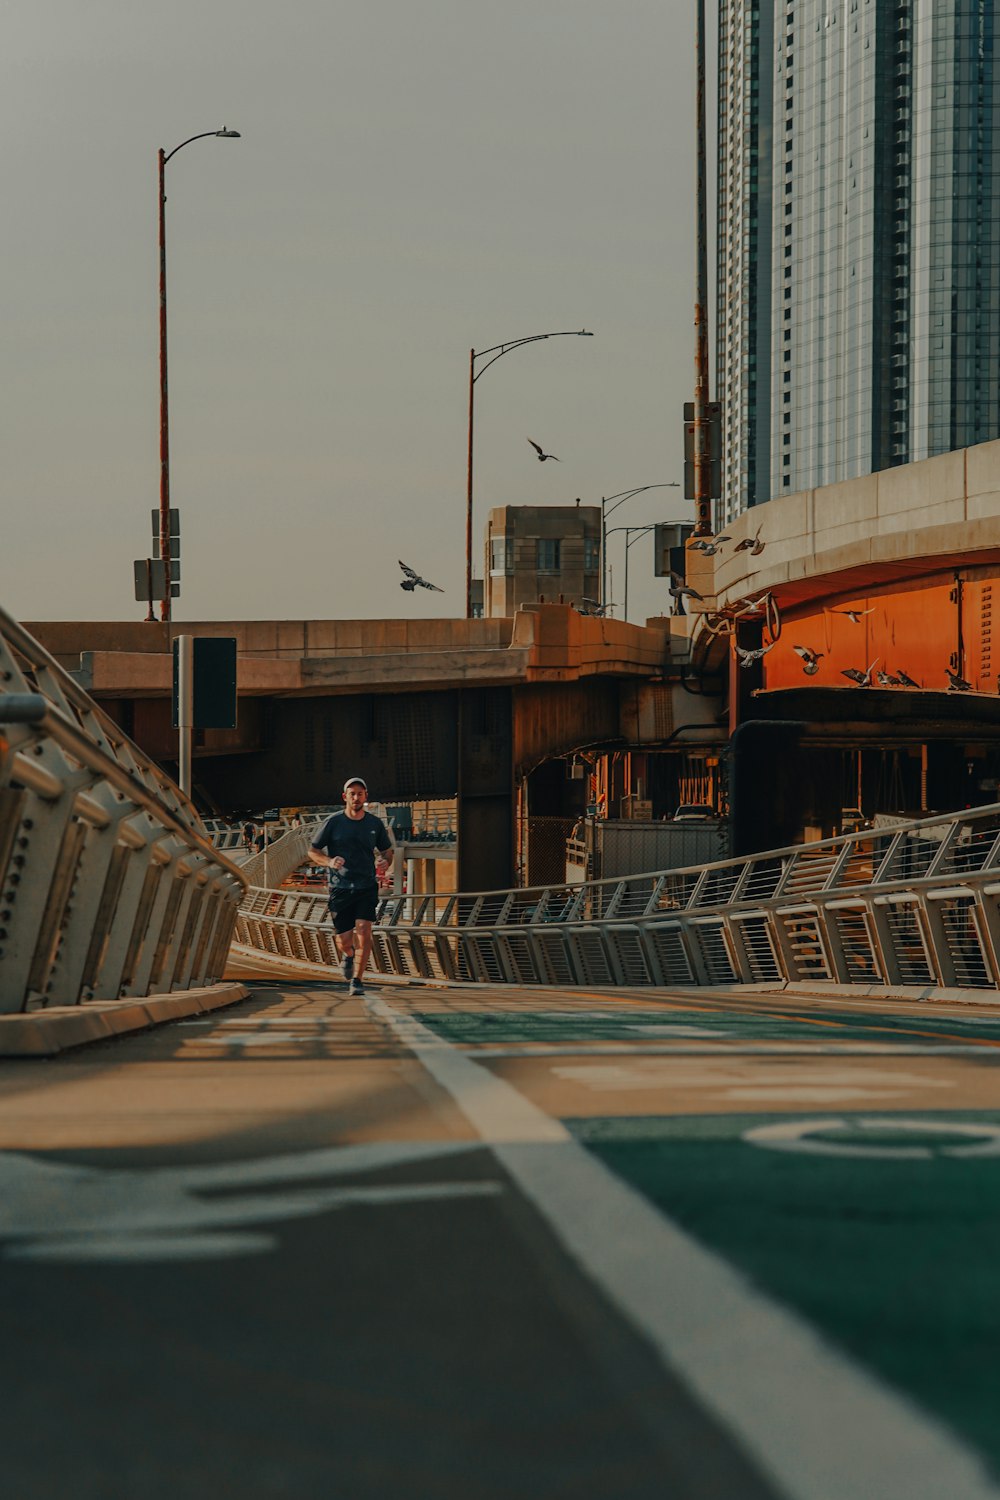 a man running across a bridge in a city